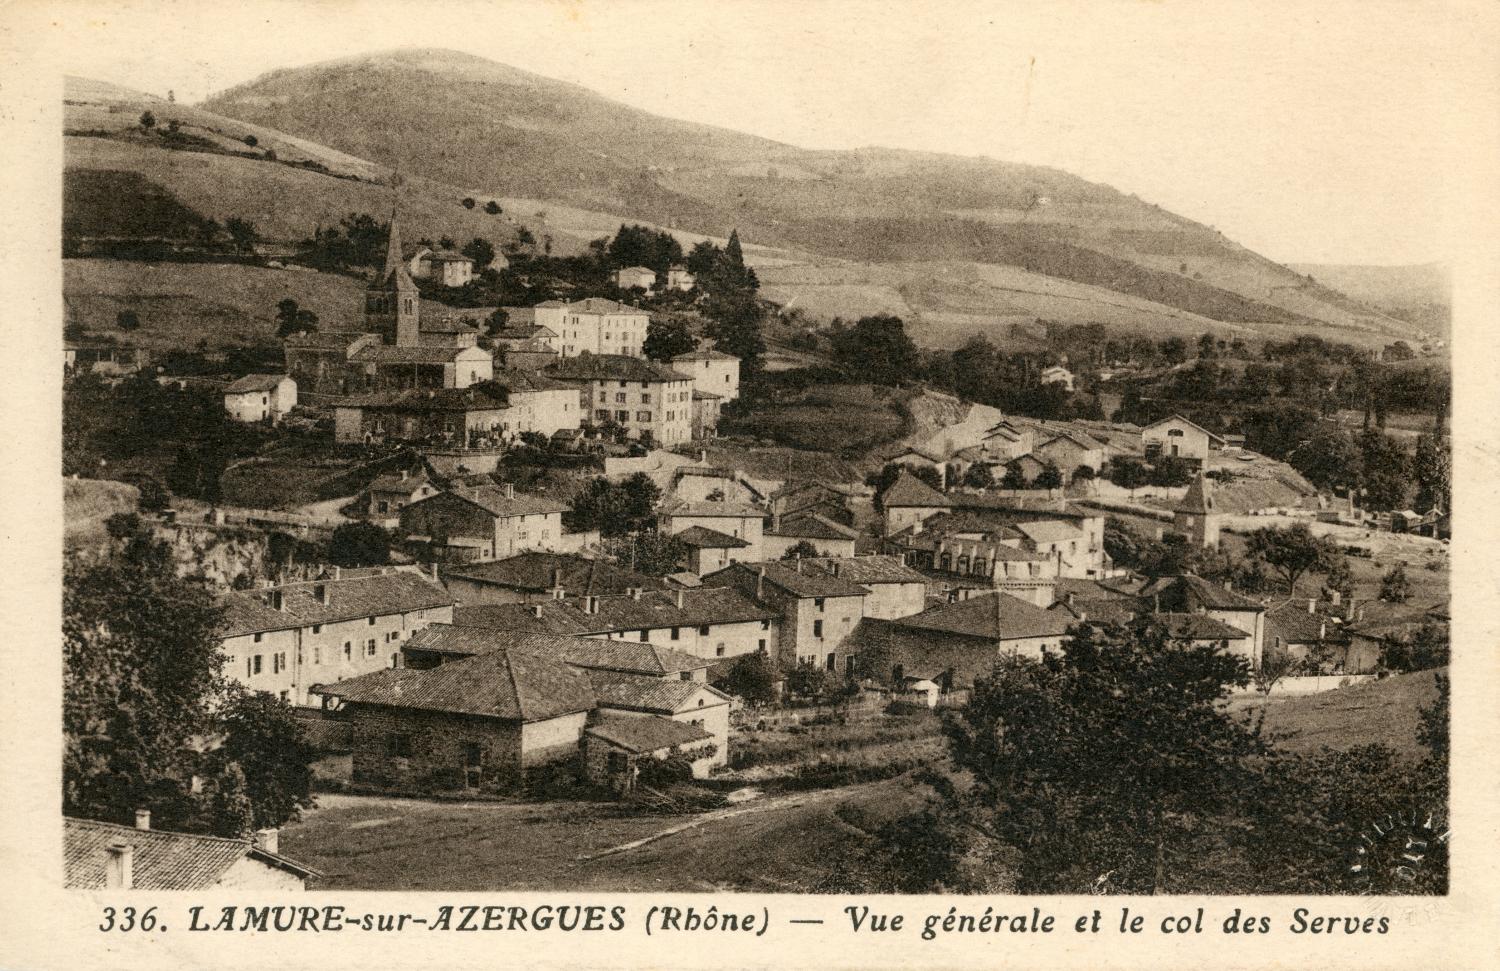 Lamure-sur-Azergues (Rhône). - Vue générale et le col des Serves